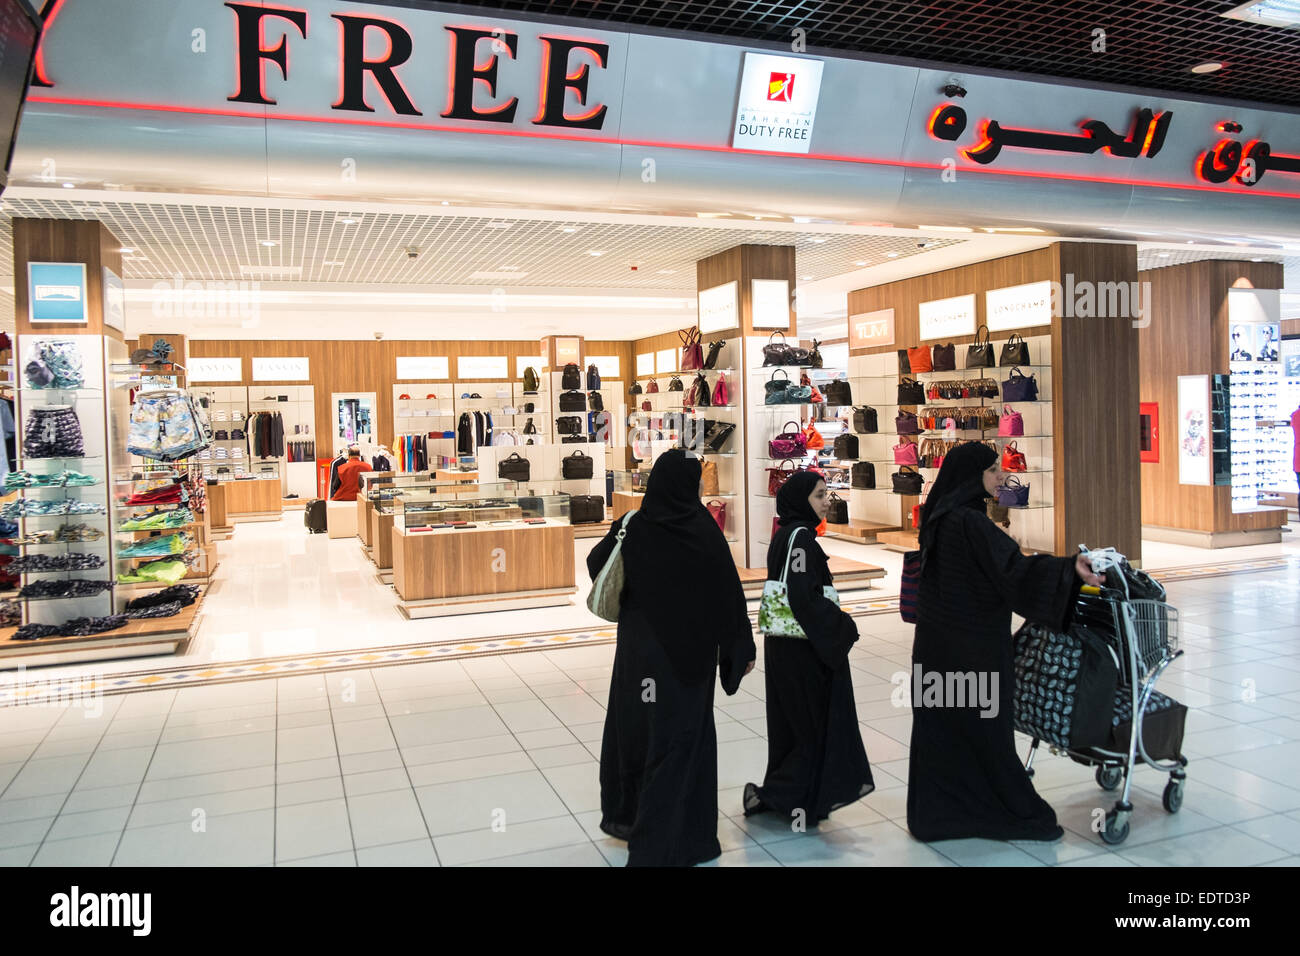 Perfume,l'aéroport de Bahreïn, Bahreïn, au Moyen-Orient. Couverts, musulmans, les femmes, en passant, Duty Free, boutique, à l'Aéroport International de Bahreïn, Banque D'Images